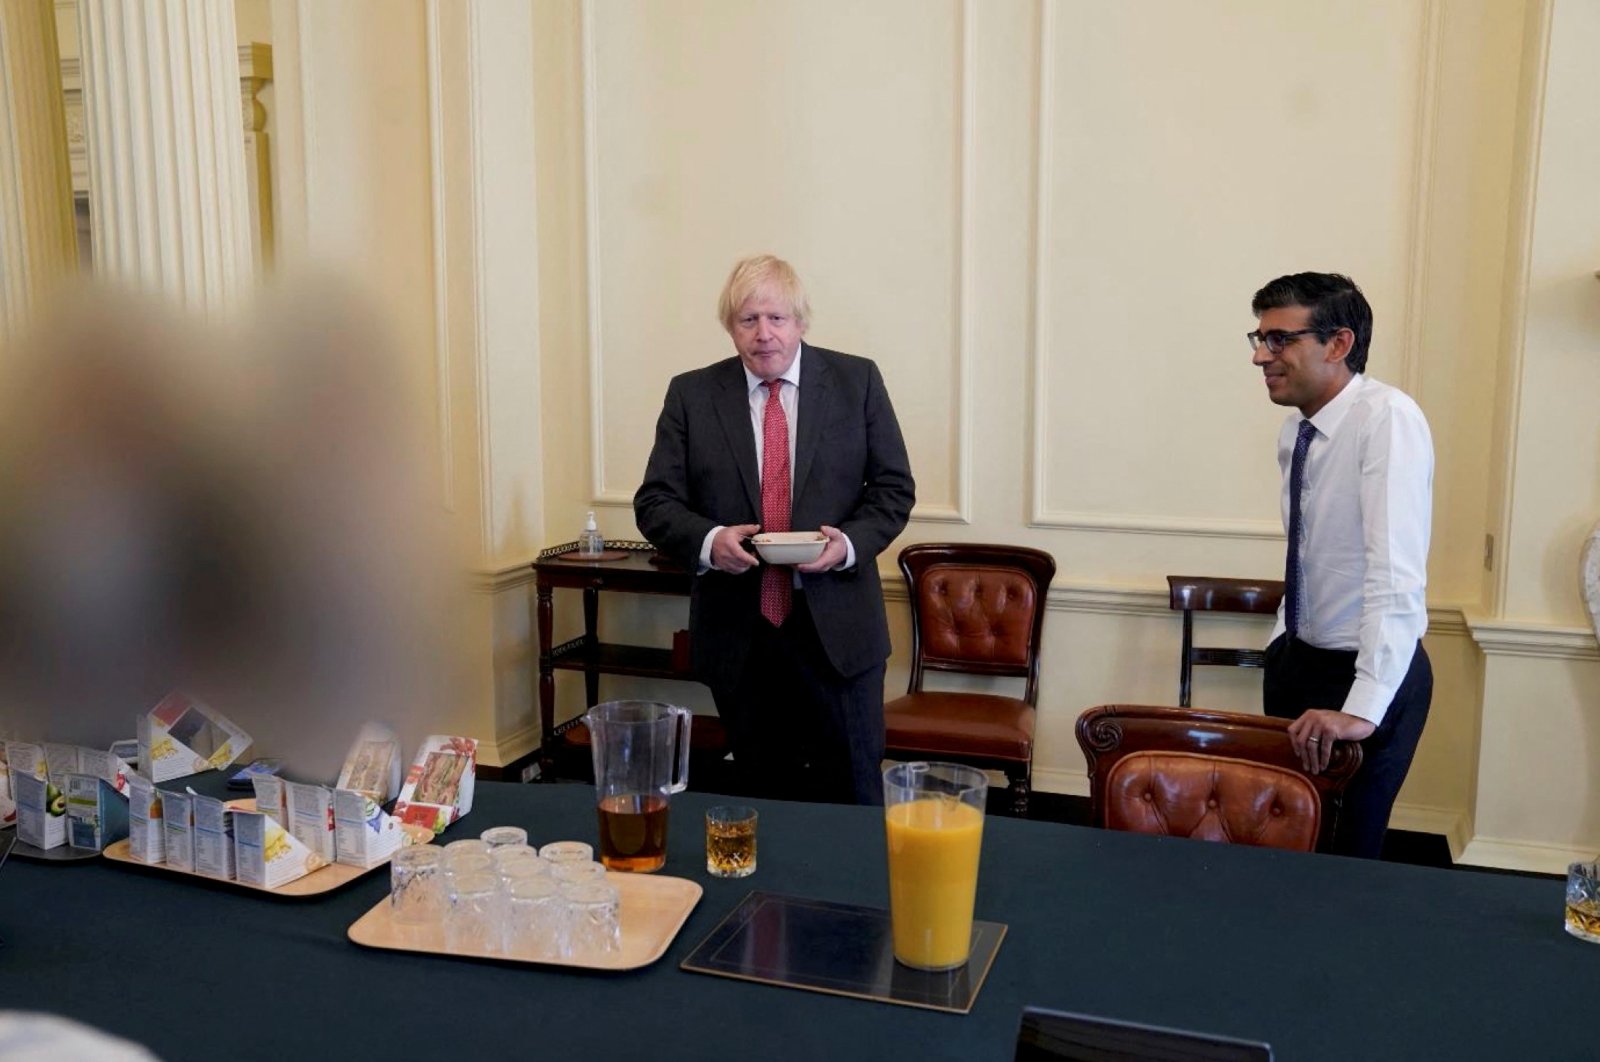 Laporan ‘partygate’ Inggris menyalahkan kantor PM Johnson untuk pesta COVID-19